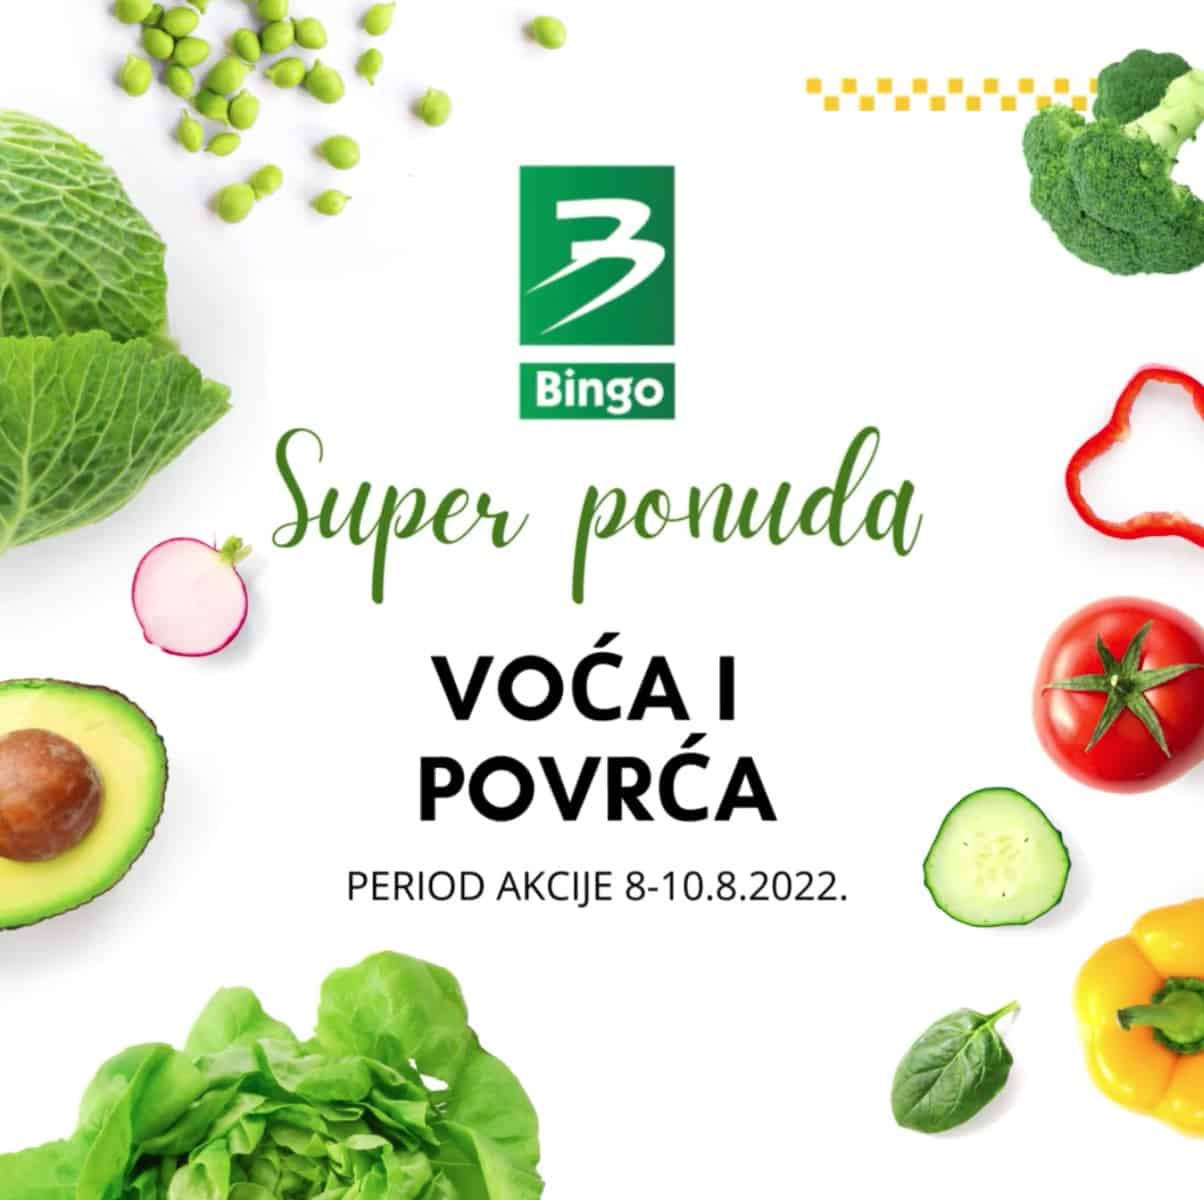 Bingo katalog voce i povrce SUPER CIJENE avgust 2022 katalog snizenja 8-10.8.2022. 